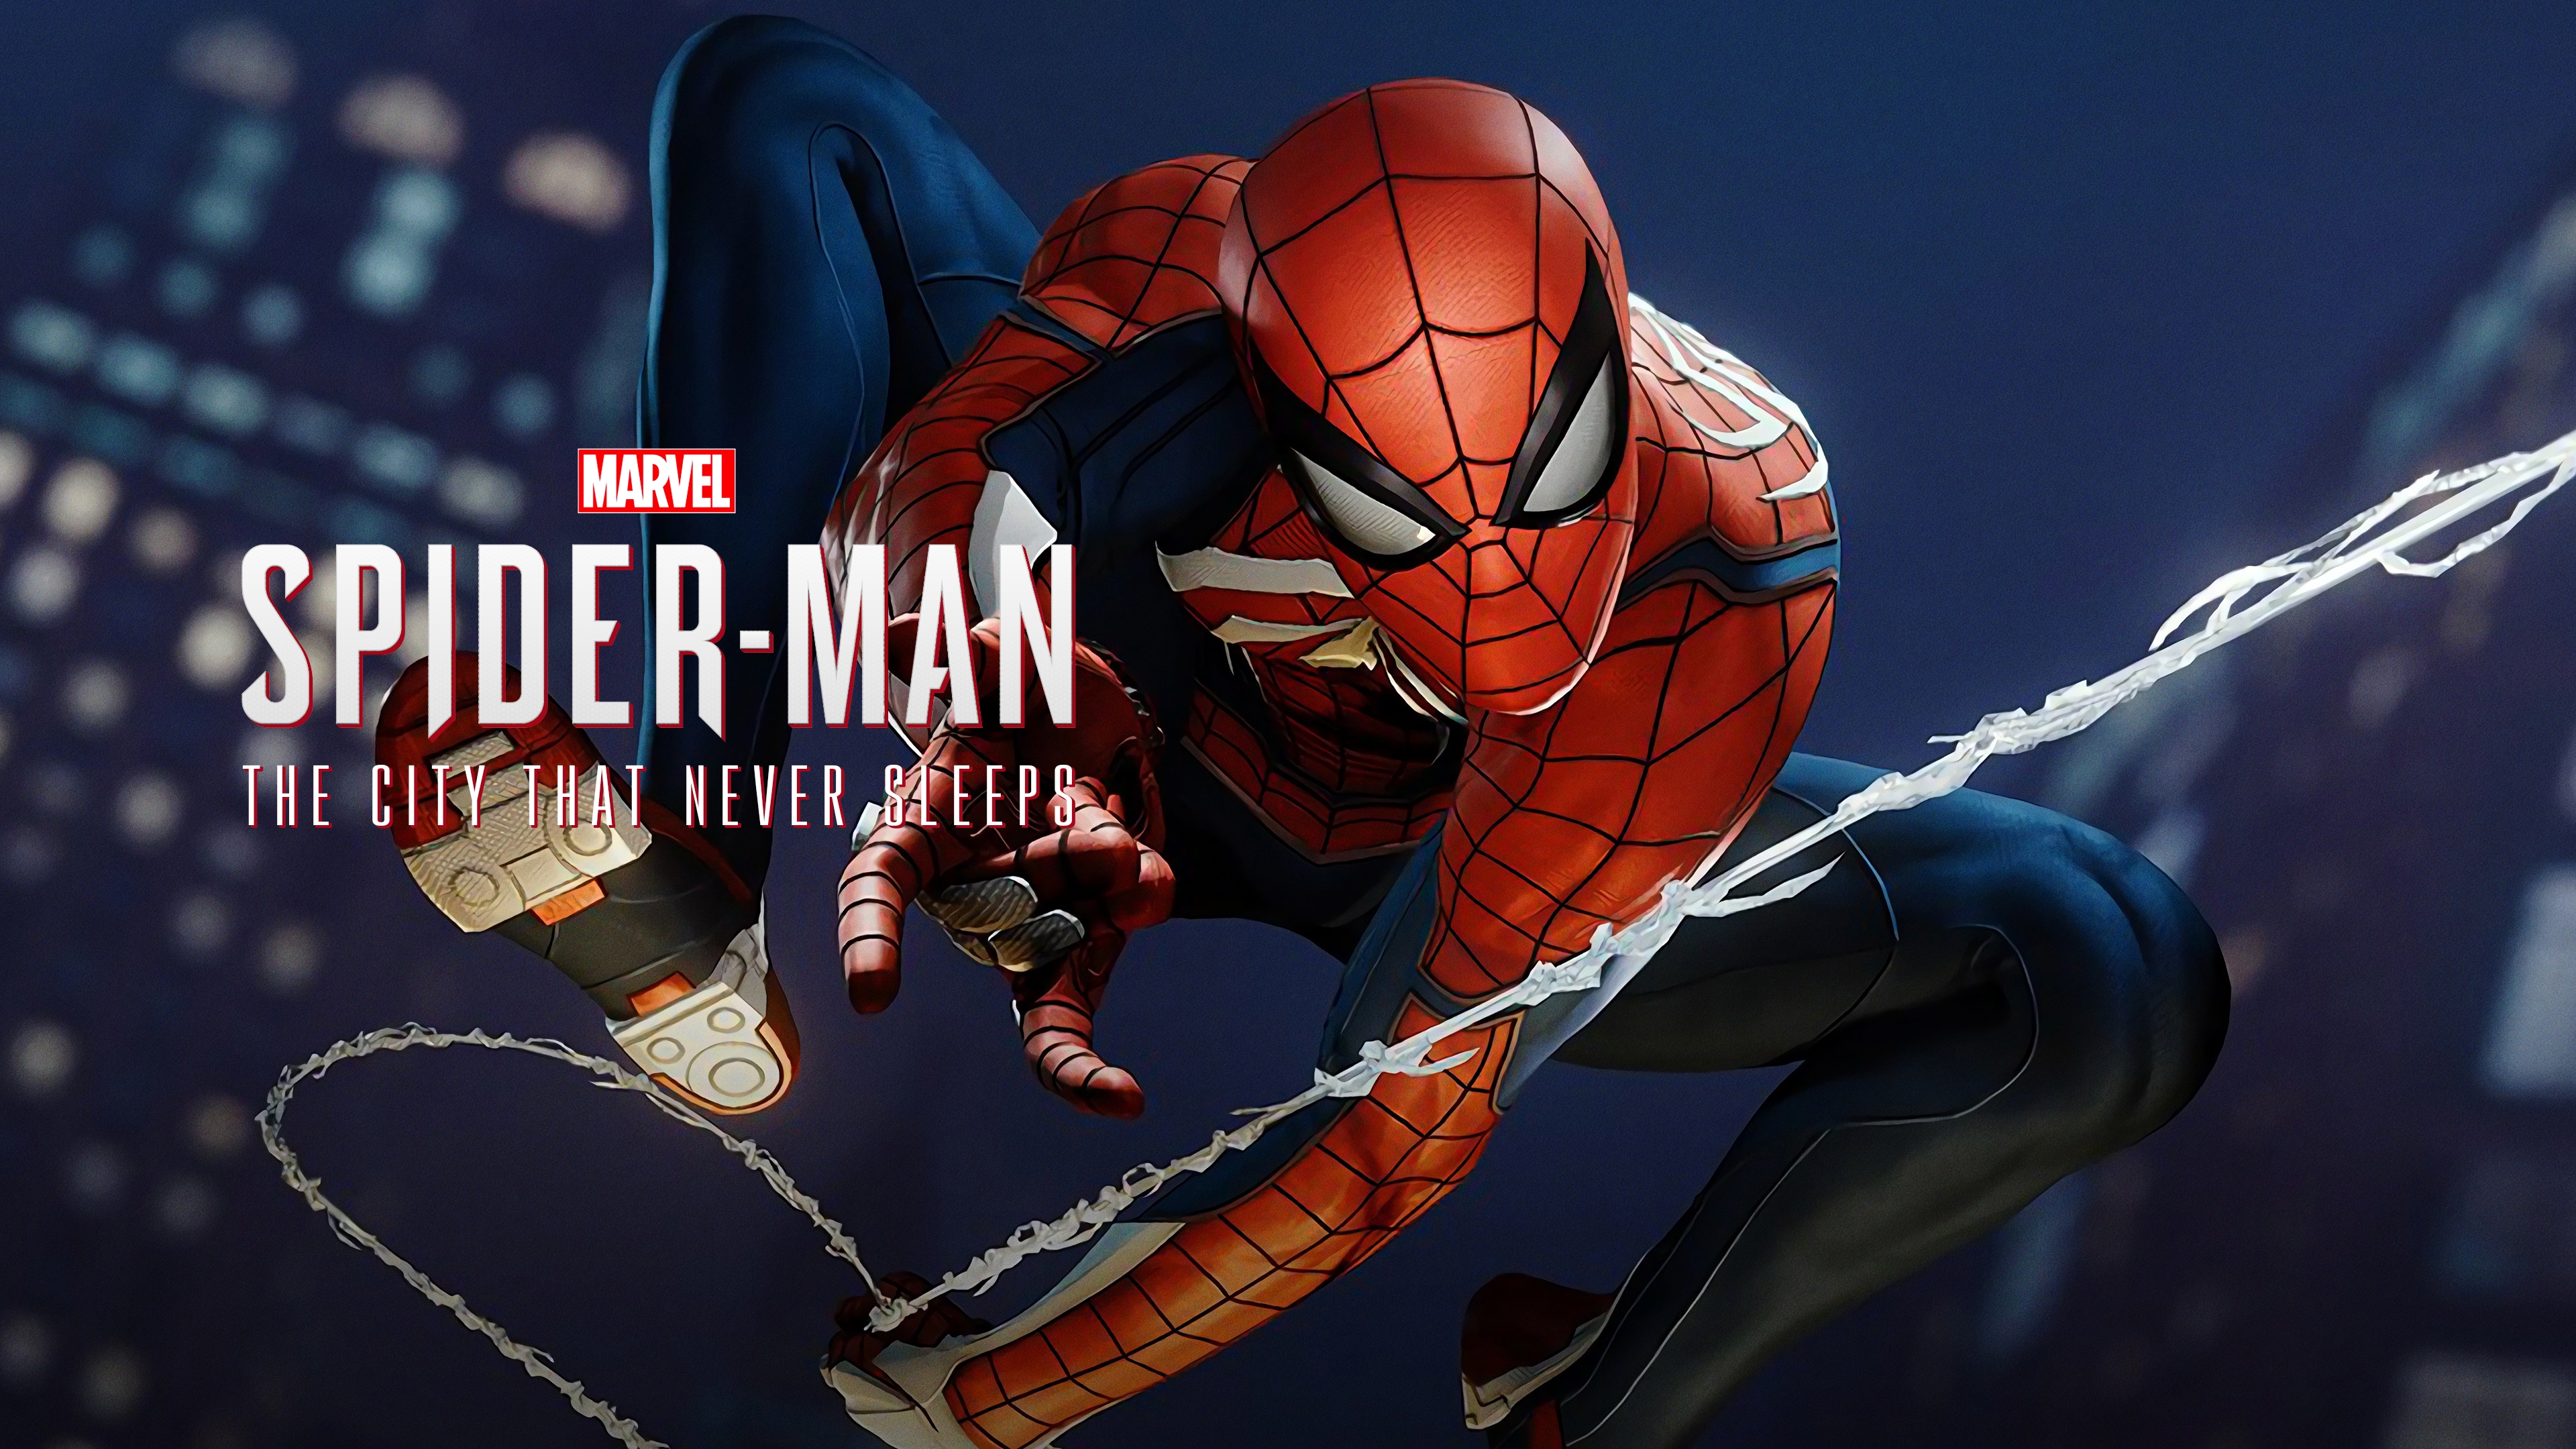 Playstation Marvel's Spider-Man